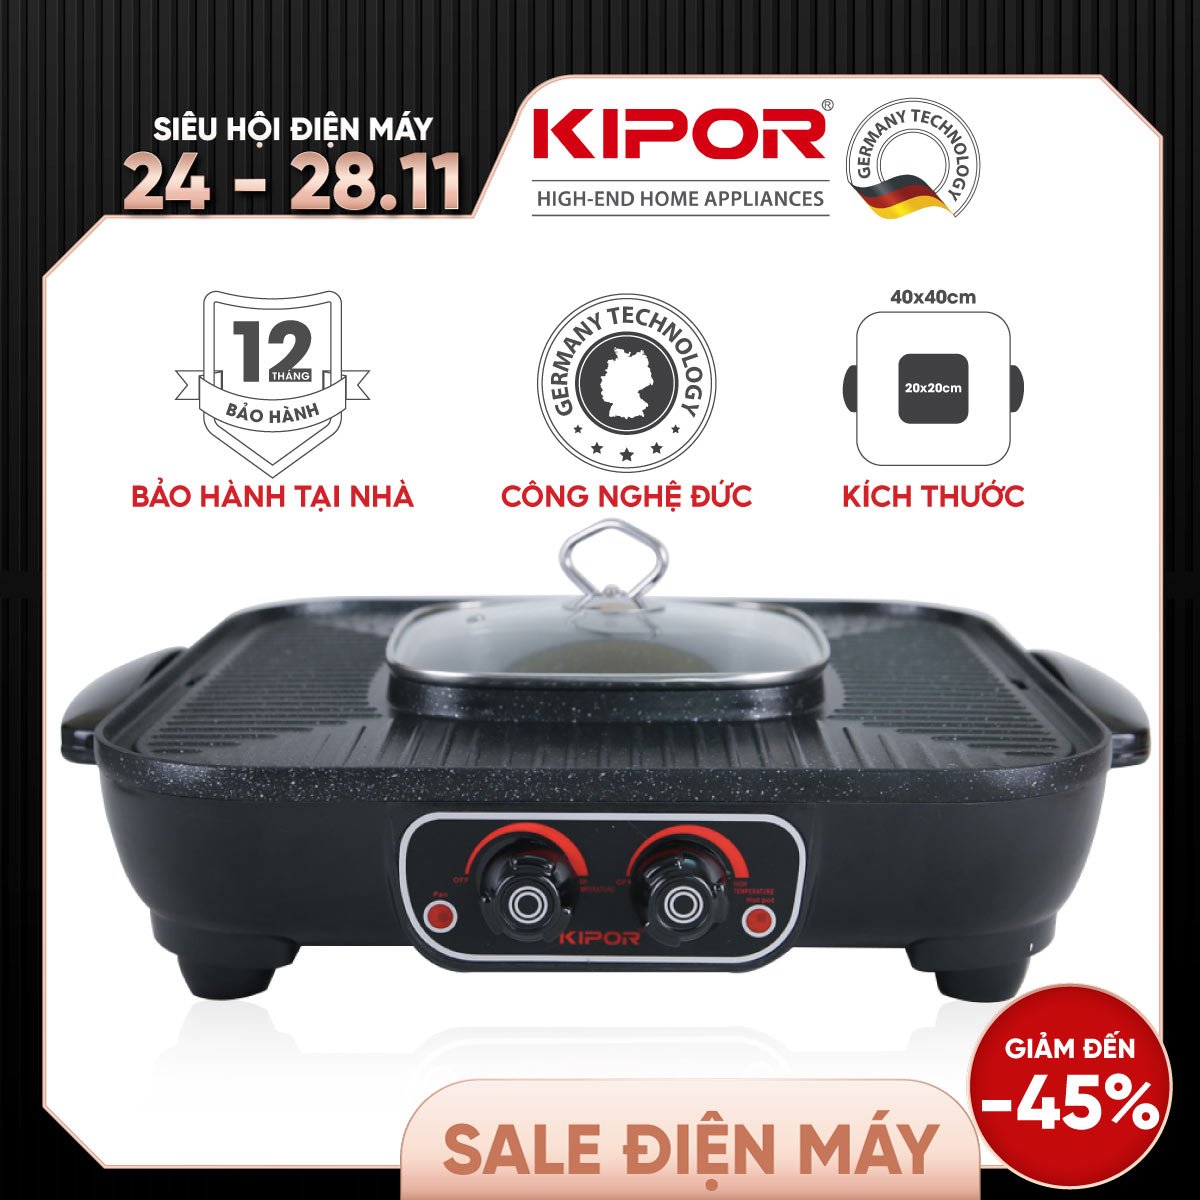 Bếp lẩu nướng điện không khói KIPOR KP-HG4020 - Lẩu, nướng đồng thời điều chỉnh nhiệt độc lập - Chống dính WHITFORD cao cấp -Hàng chính hãng